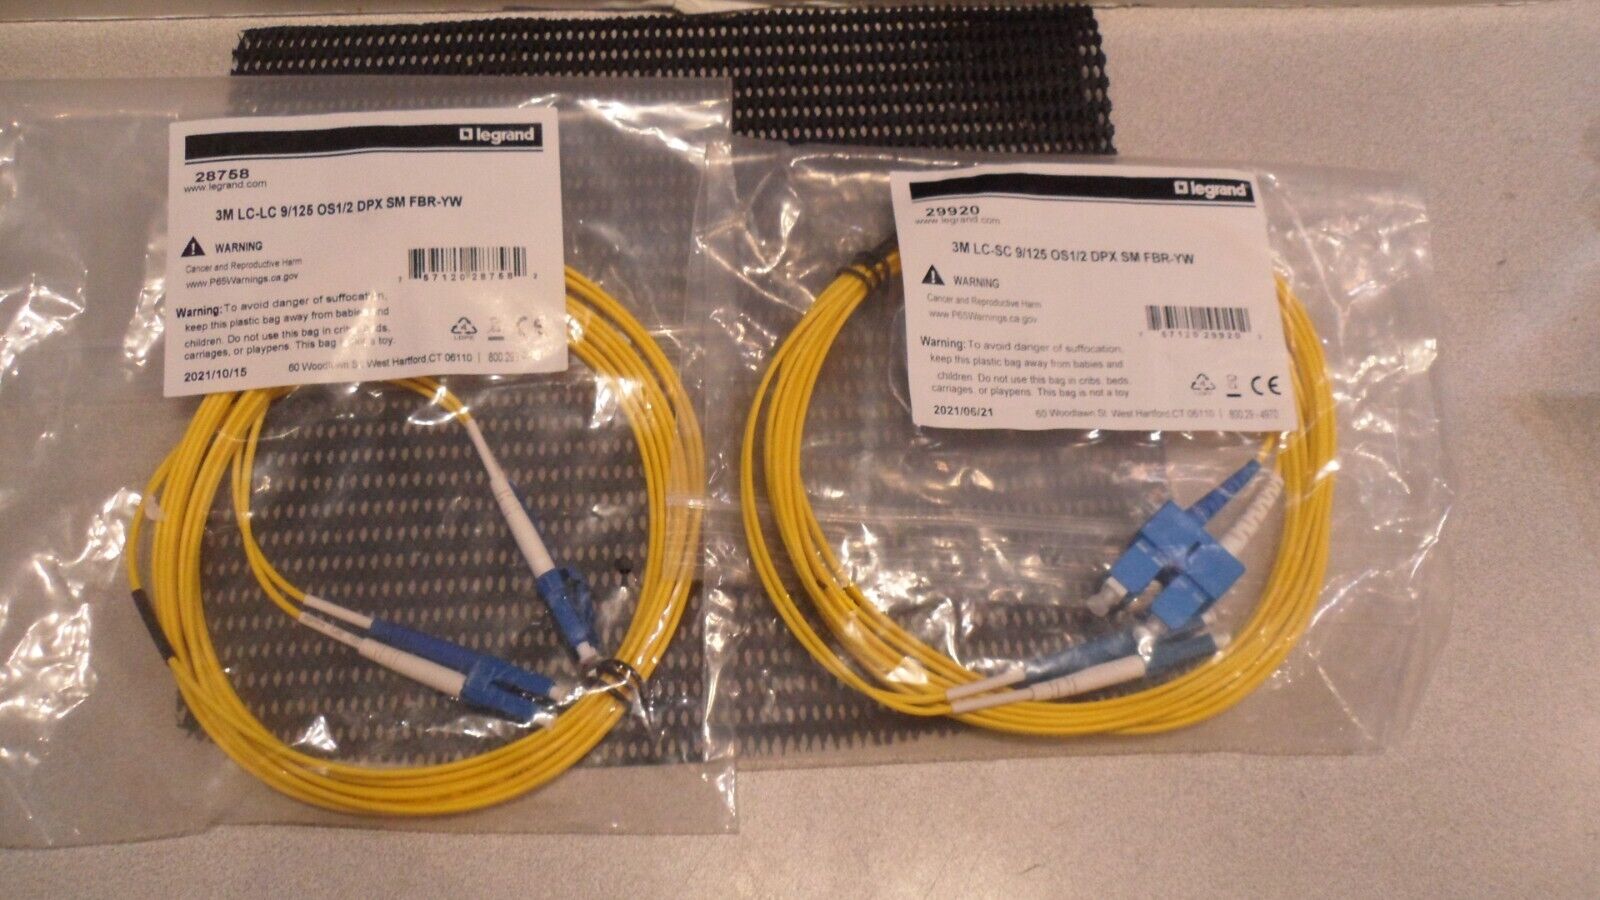 2 x Legrand 7M LC-LC 9/125 Duplex Single-Mode Fiber Cable - New